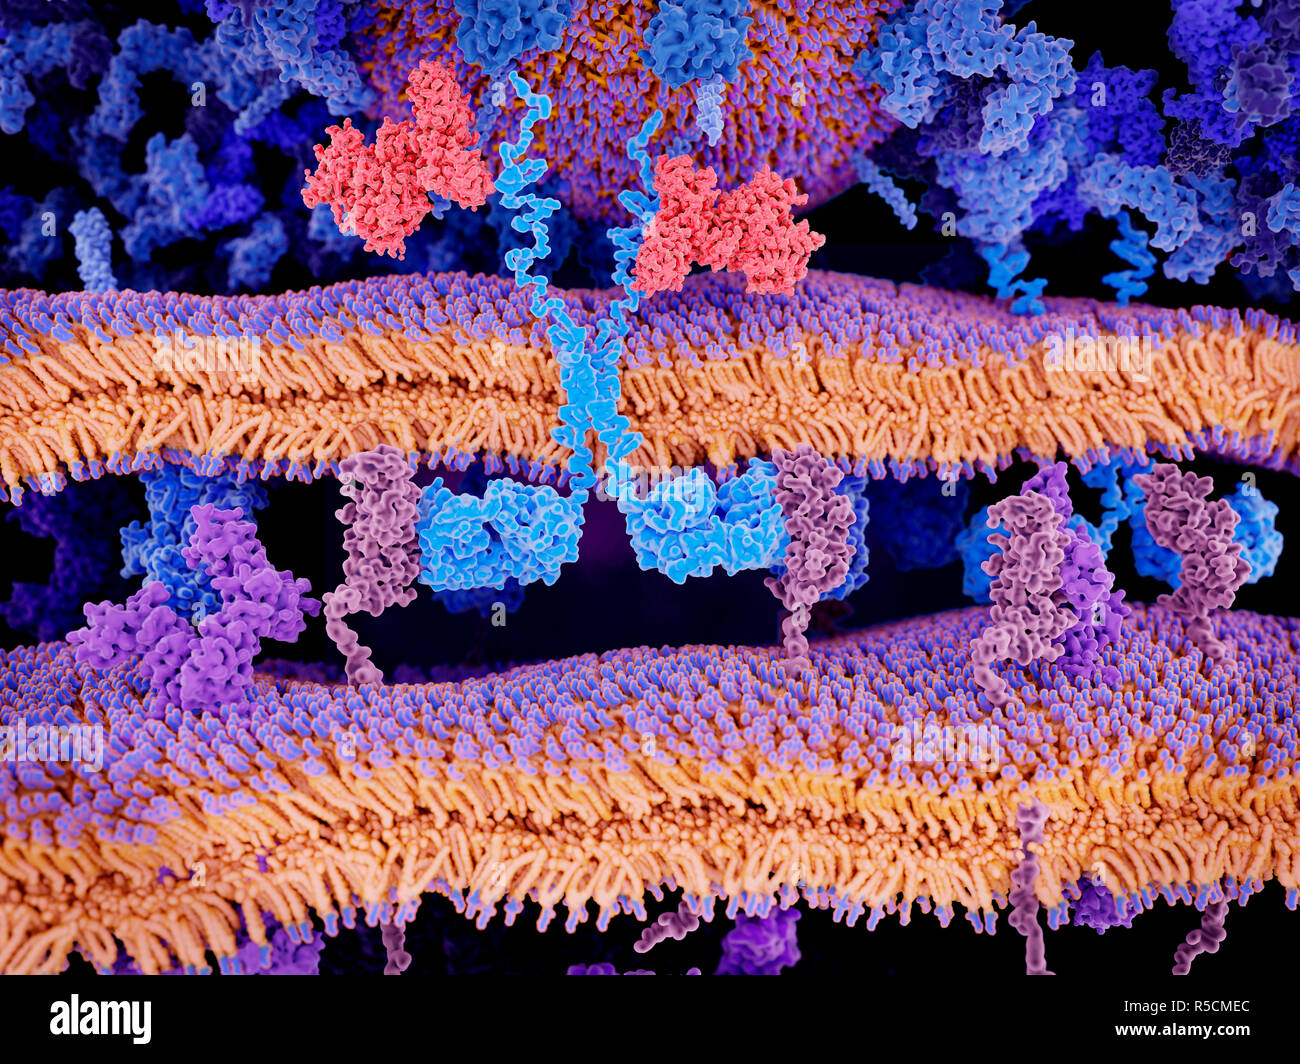 Location T cell l'immunothérapie du cancer, de l'illustration. Récepteur antigène chimérique (bleu clair, en haut à gauche) se liant aux molécules CD19 (rose, centre gauche et cen Banque D'Images